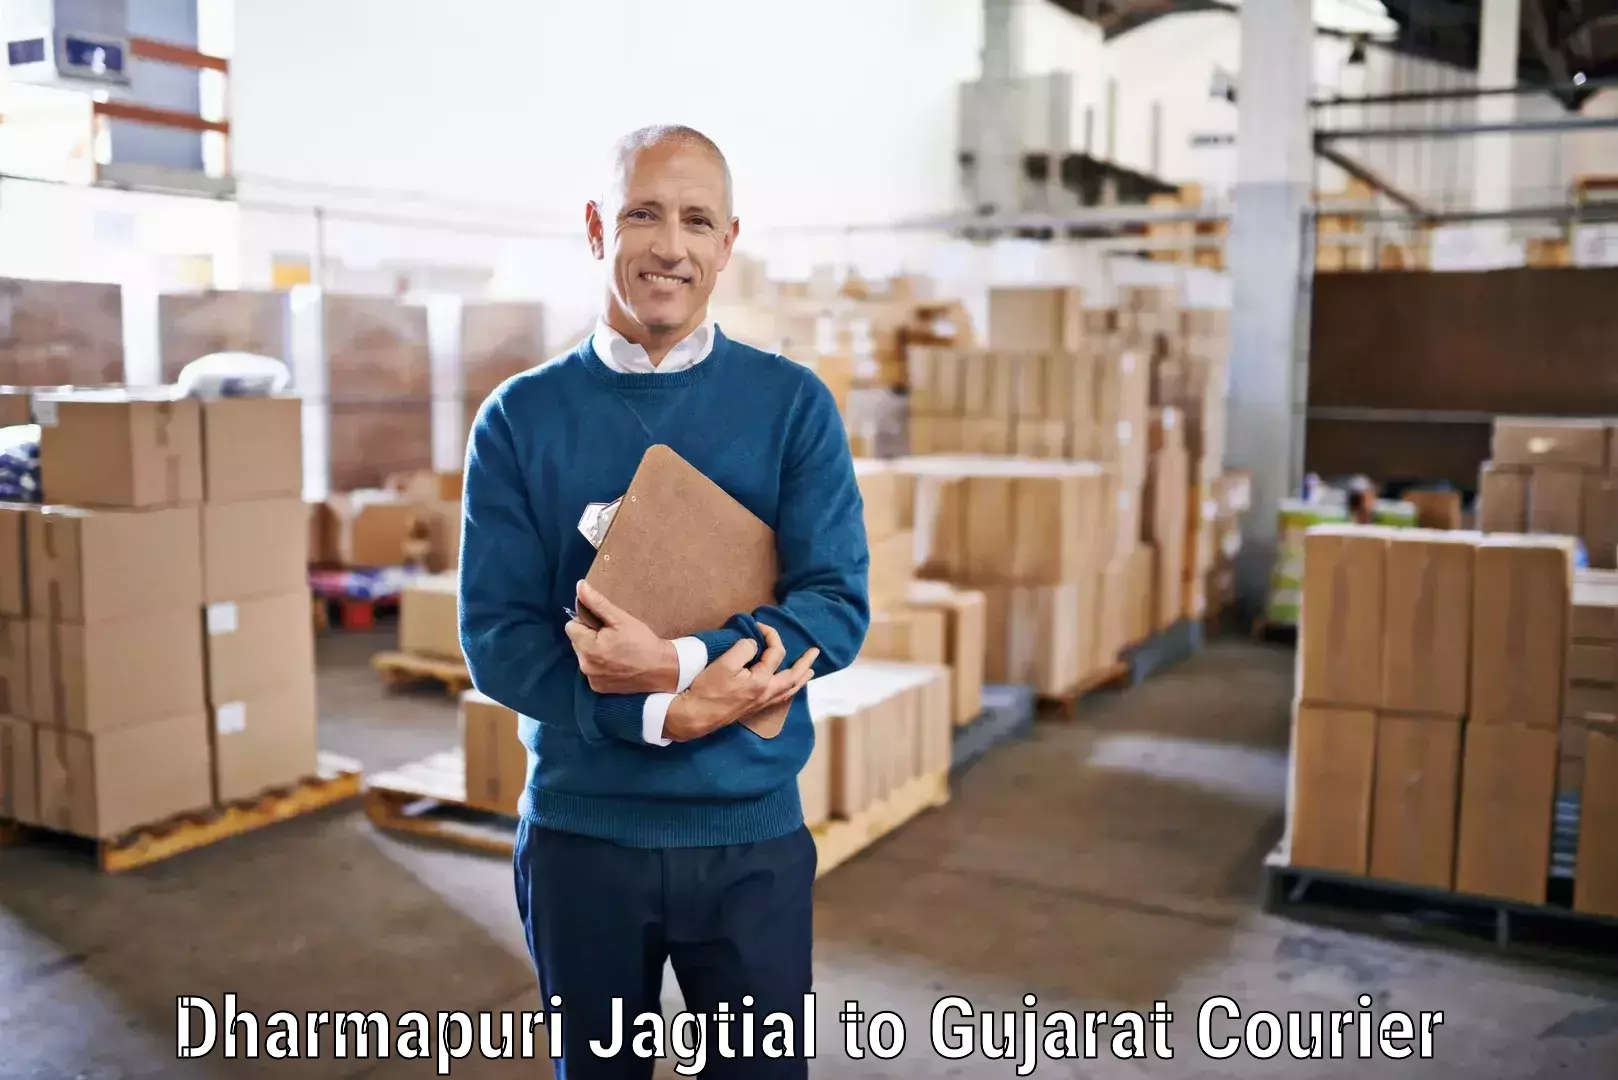 Professional parcel services Dharmapuri Jagtial to Vyara